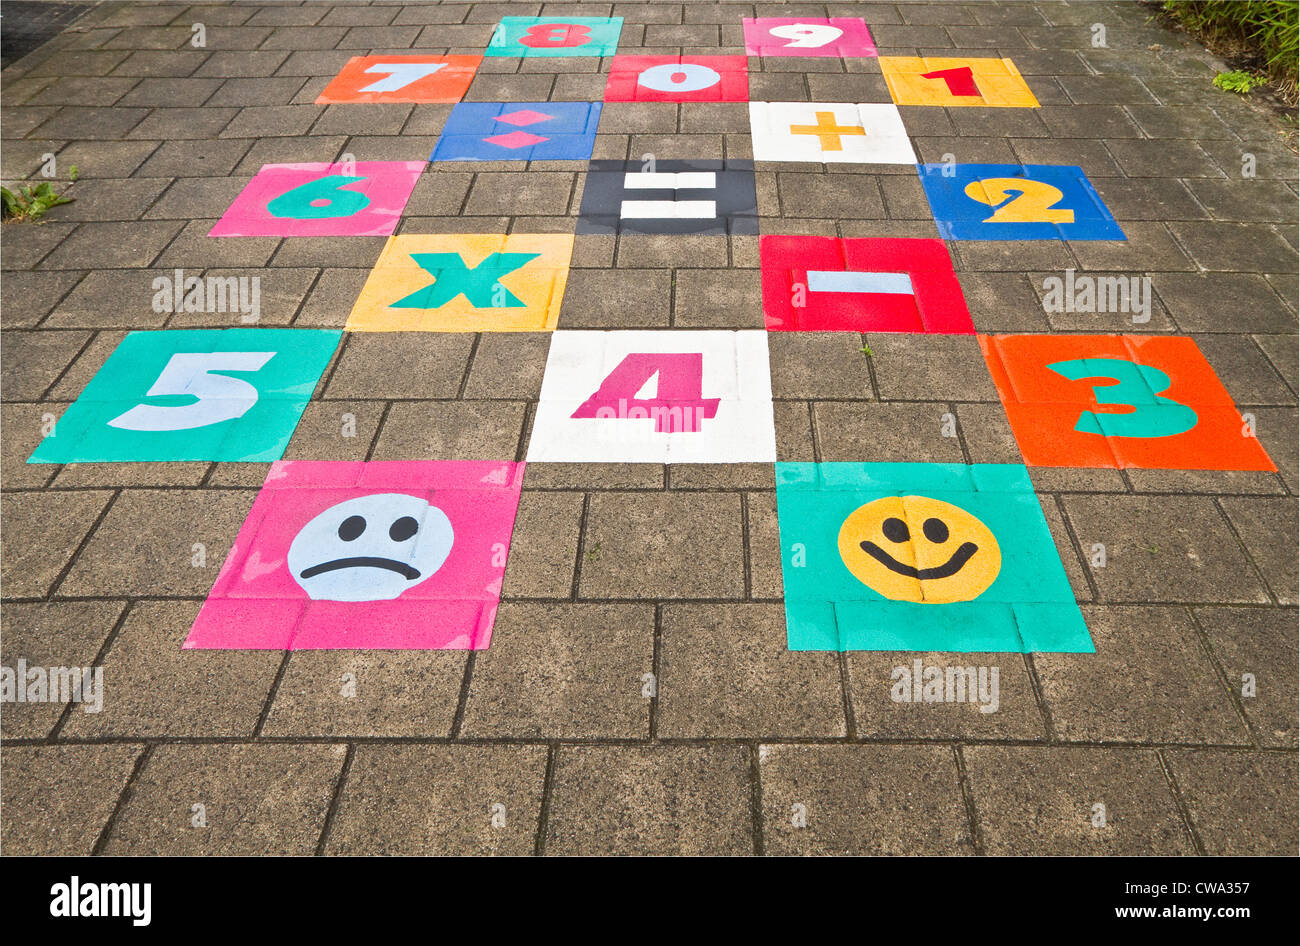 Jouer en plein air - Streetgame pour les enfants peints sur la chaussée dans la banlieue moderne Banque D'Images